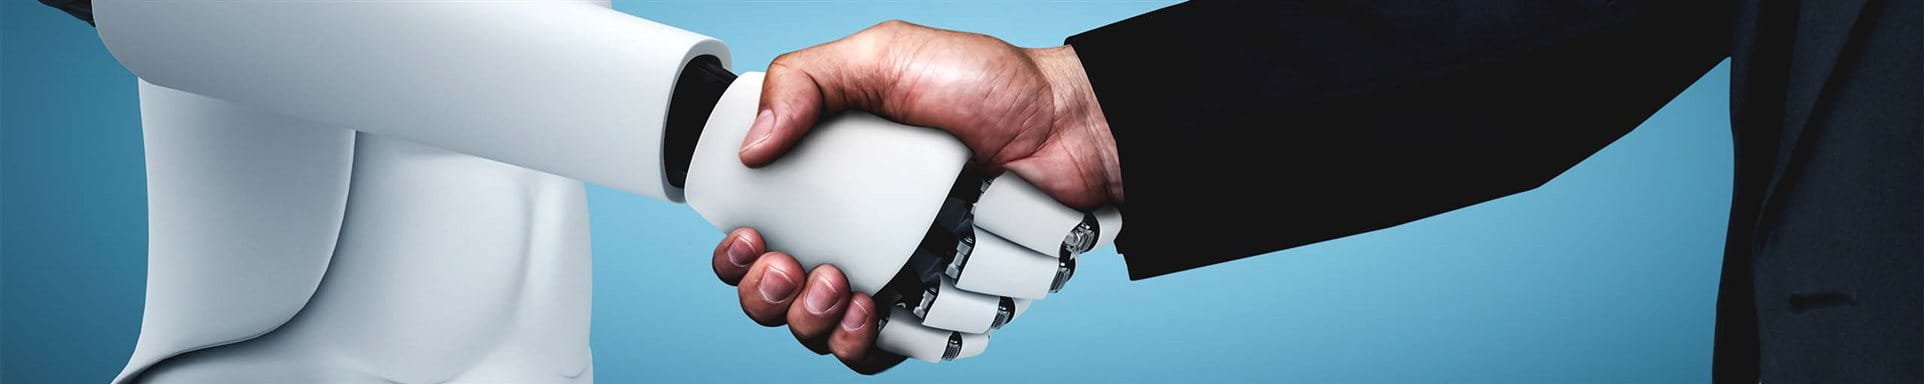 Robot and human shake hands